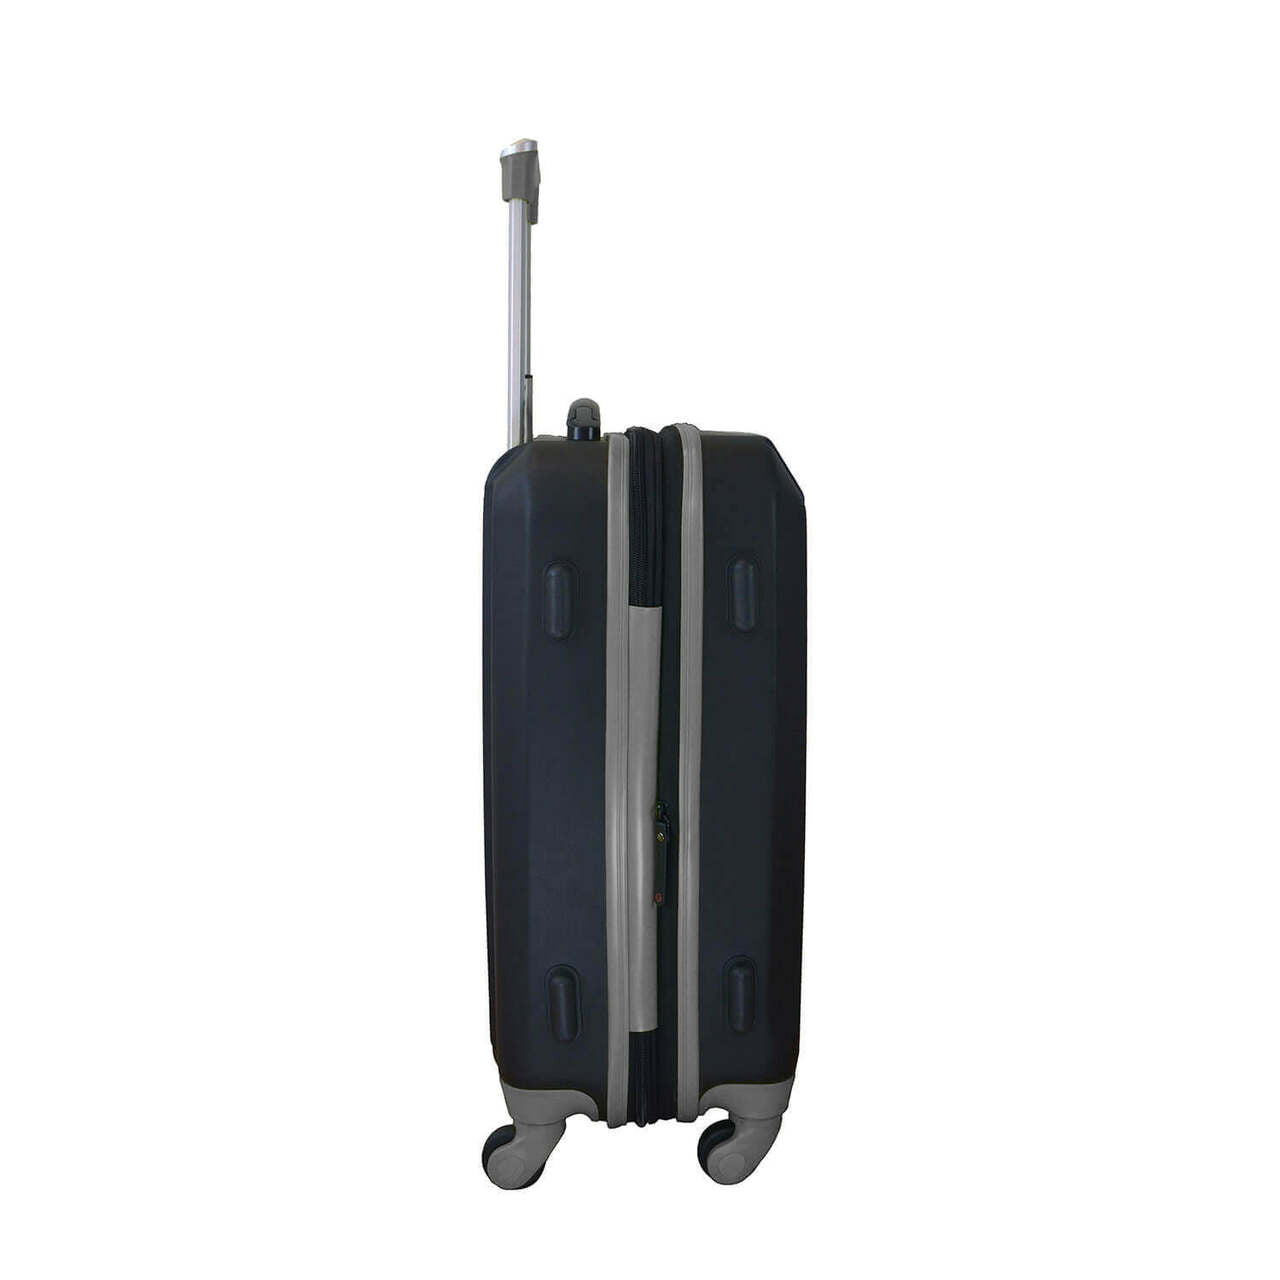 Raiders Carry On Spinner Luggage | Las Vegas Raiders Hardcase Two-Tone Luggage Carry-on Spinner in Black